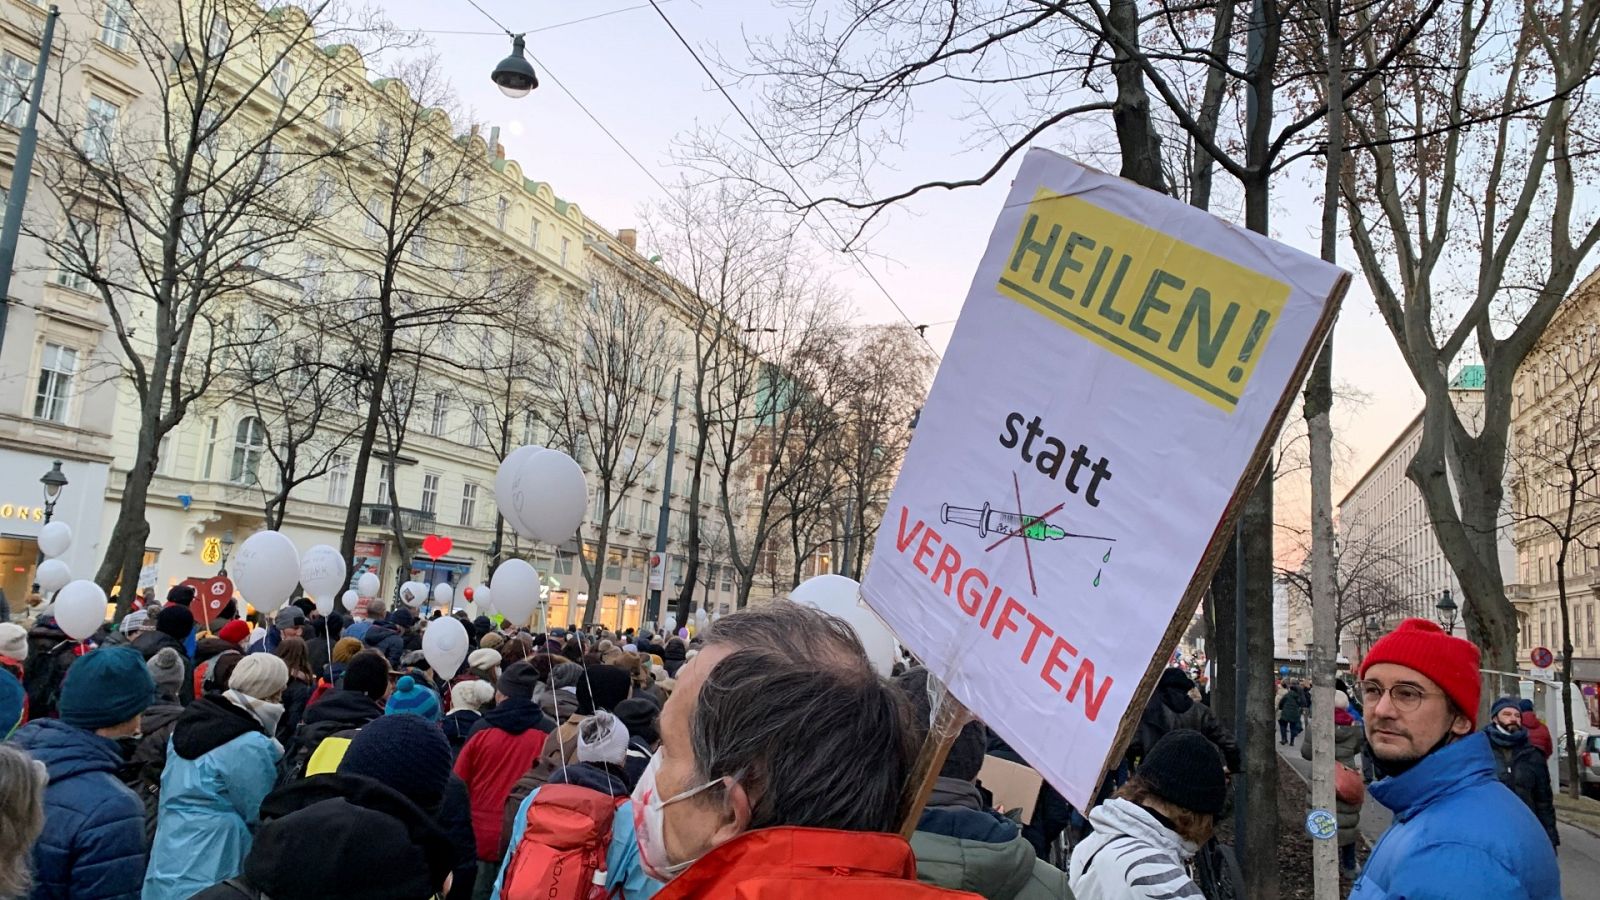 Decenas de miles de personas participan en Viena en una manifestación en contra de la vacuna anti-covid obligatoria y de la gestión de la pandemia por parte del Gobierno.